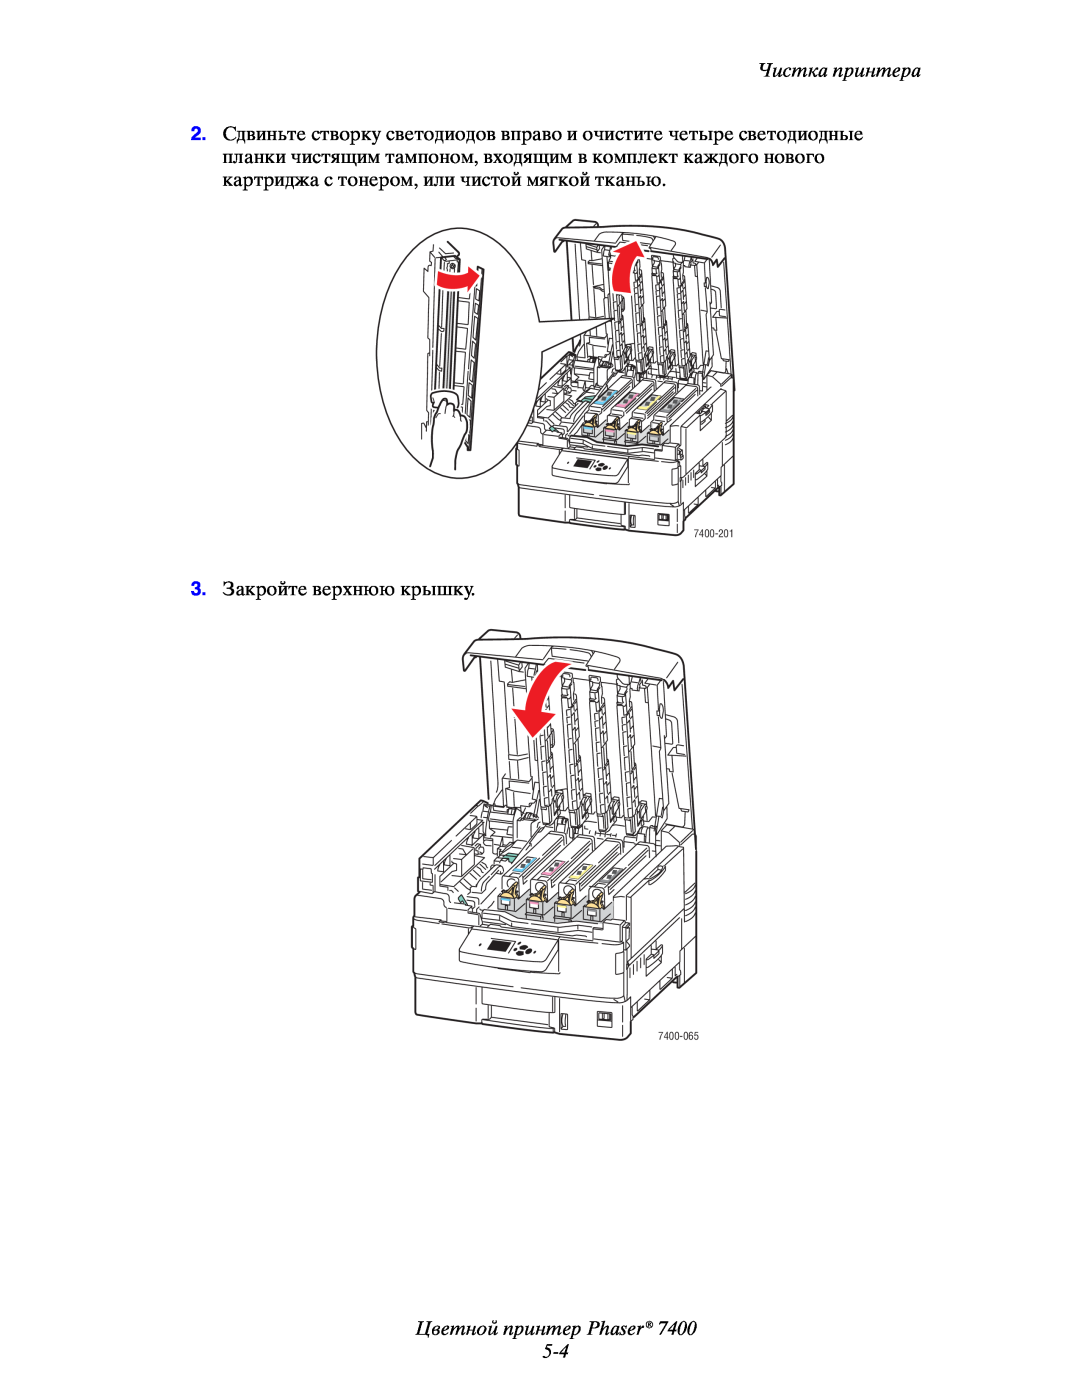 Xerox manual Цветной принтер Phaser 5-4, Чистка принтера, 3.Закройте верхнюю крышку, 7400-201, 7400-065 